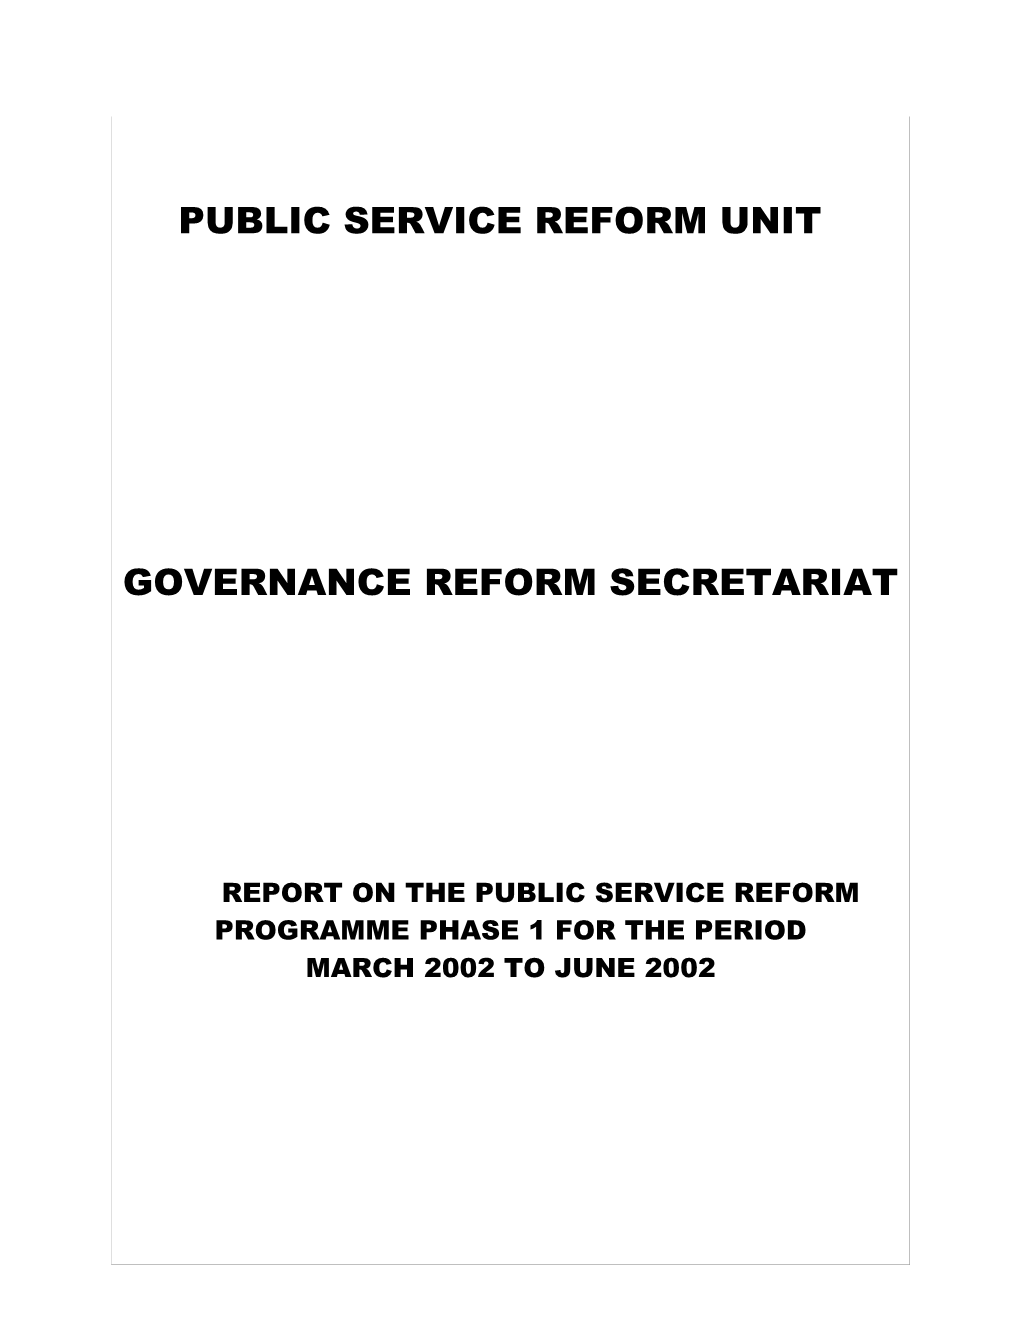 Public Service Reform Unit